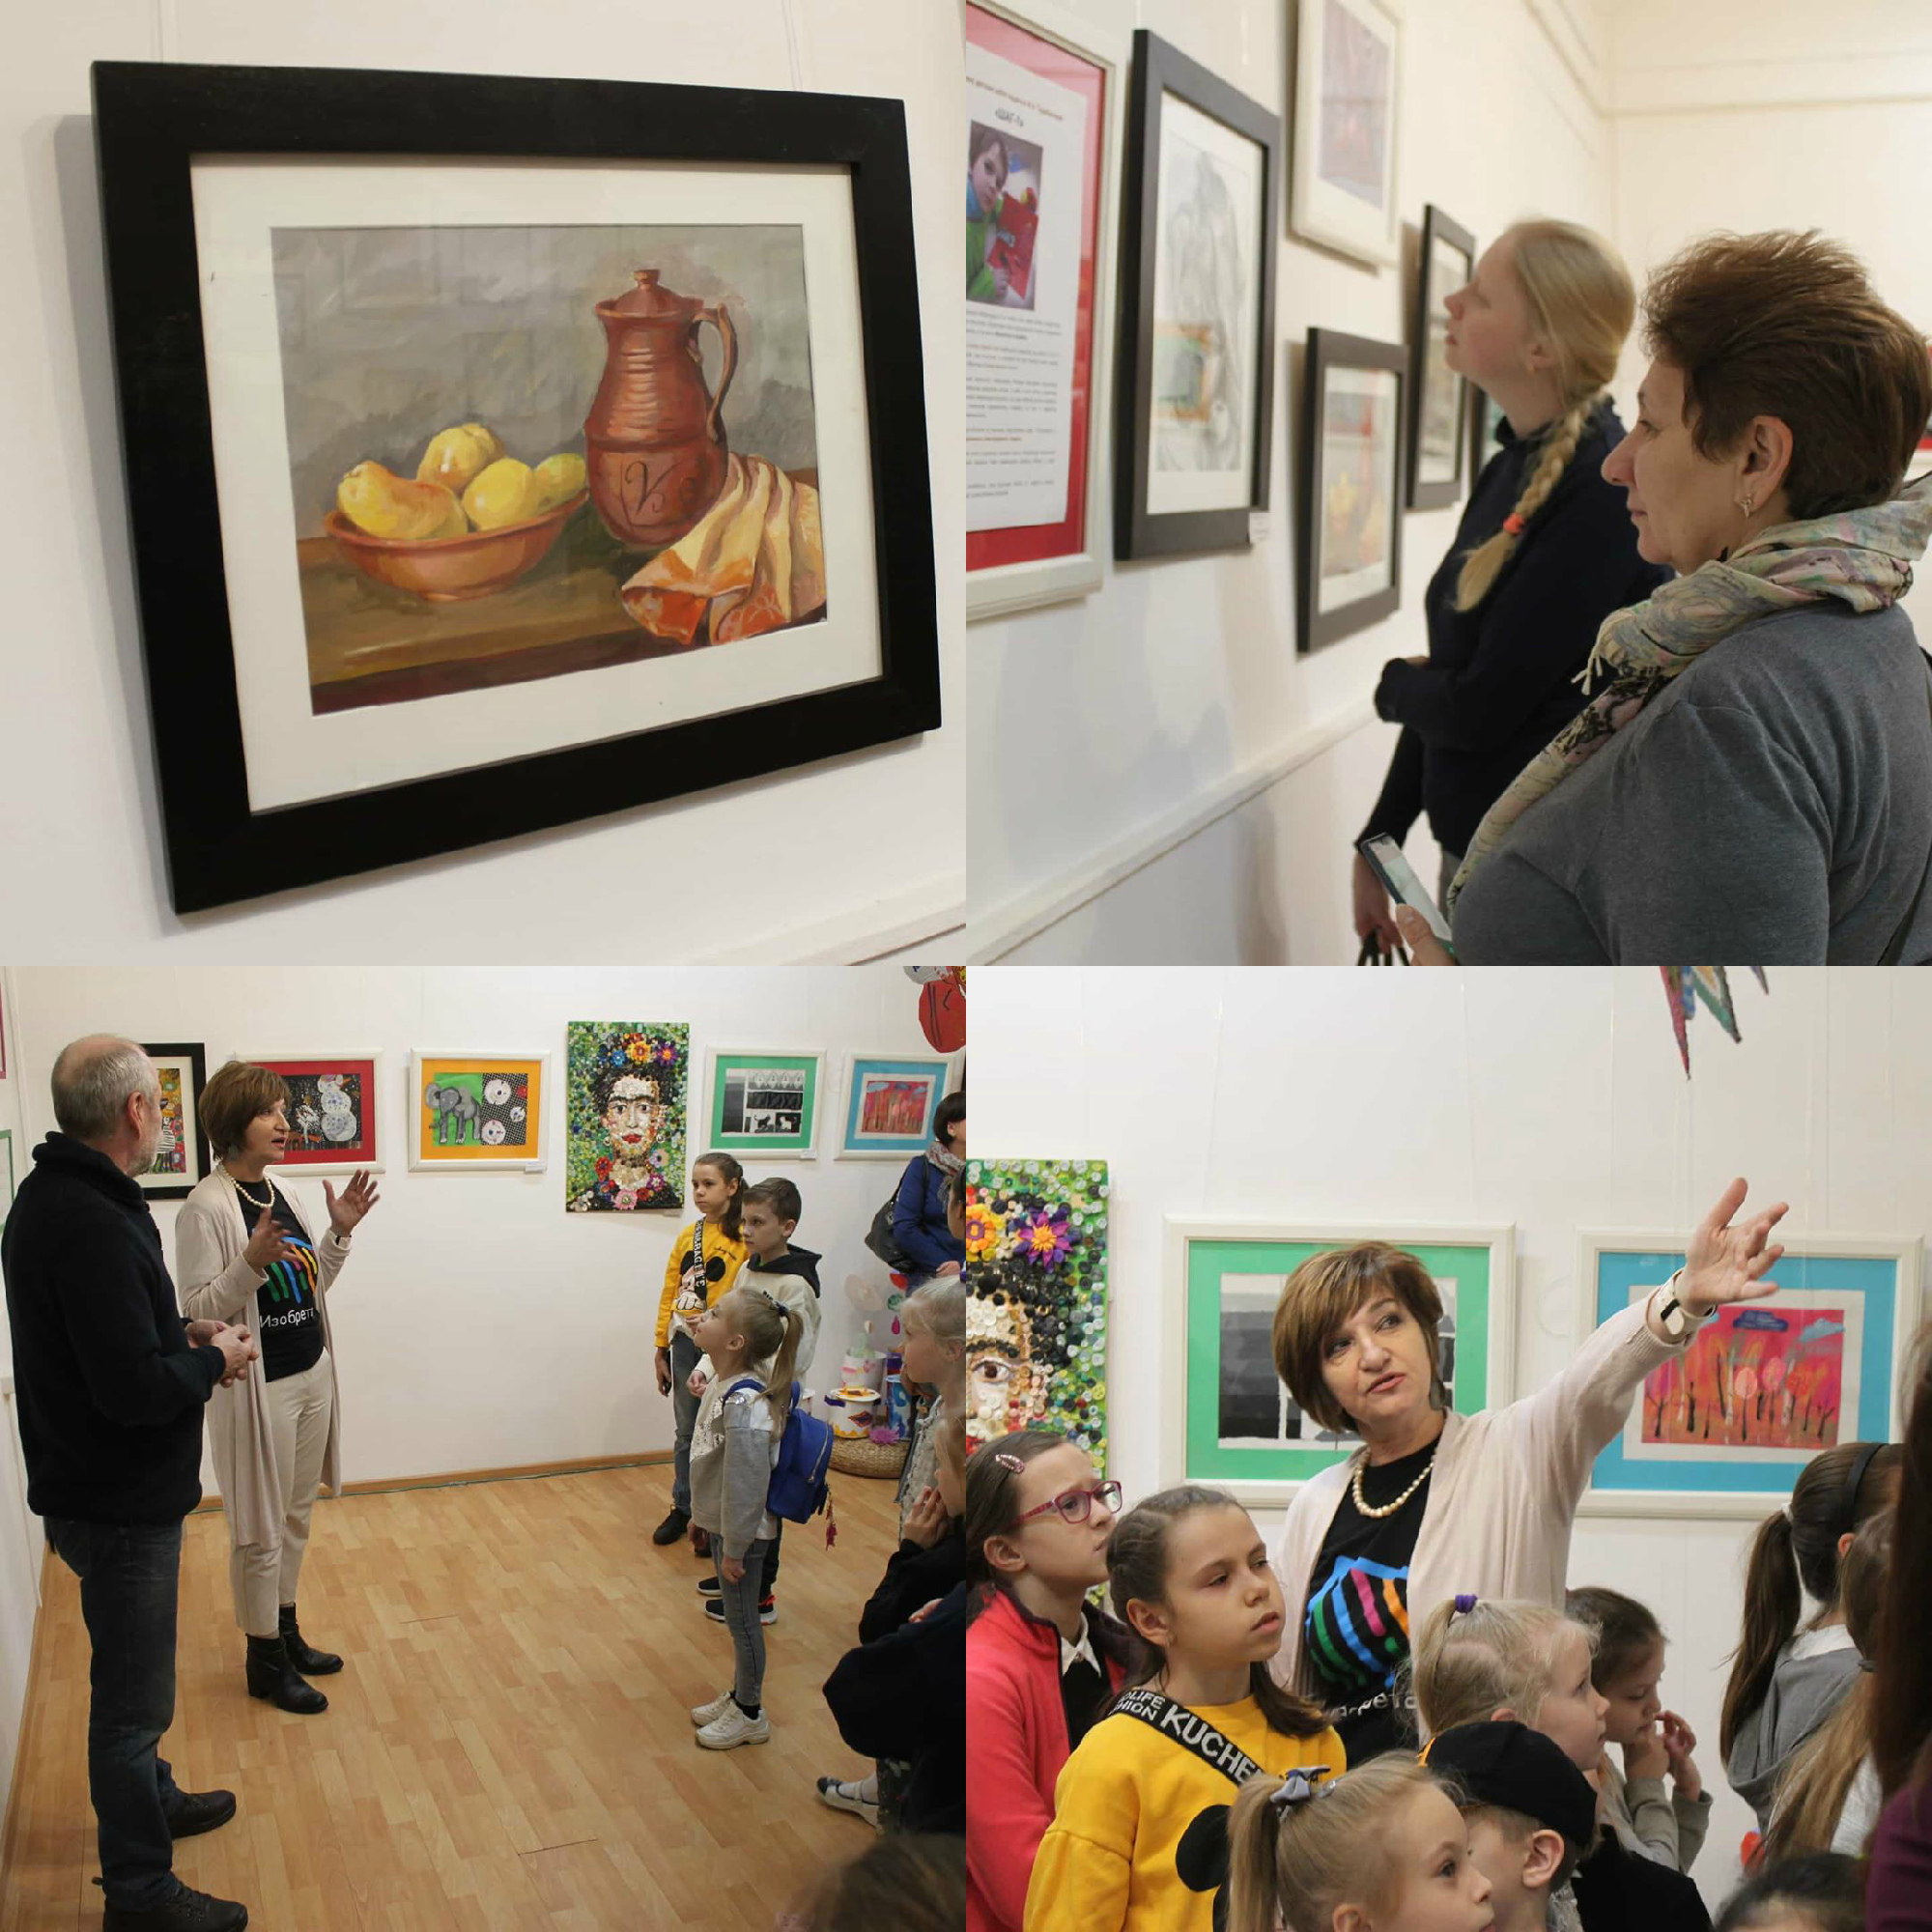 31 января 2020 - Торжественное открытие выставки детских работ педагога И.А. Тарабановой «ШАГ-1»